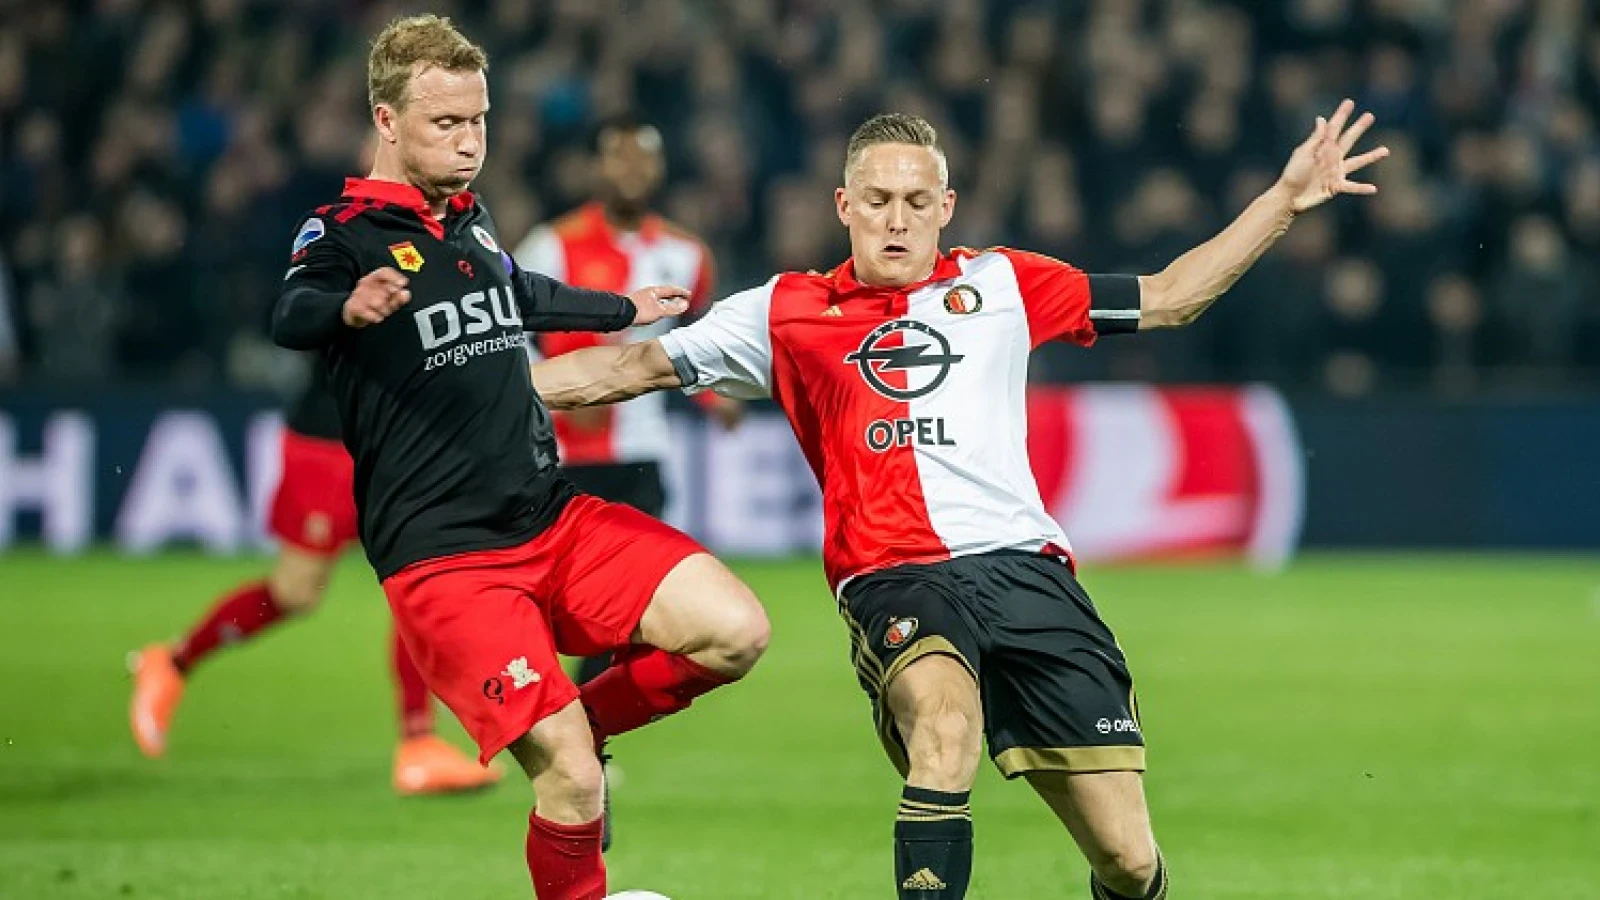 LIVE | Feyenoord - Excelsior 3-0 | Einde wedstrijd